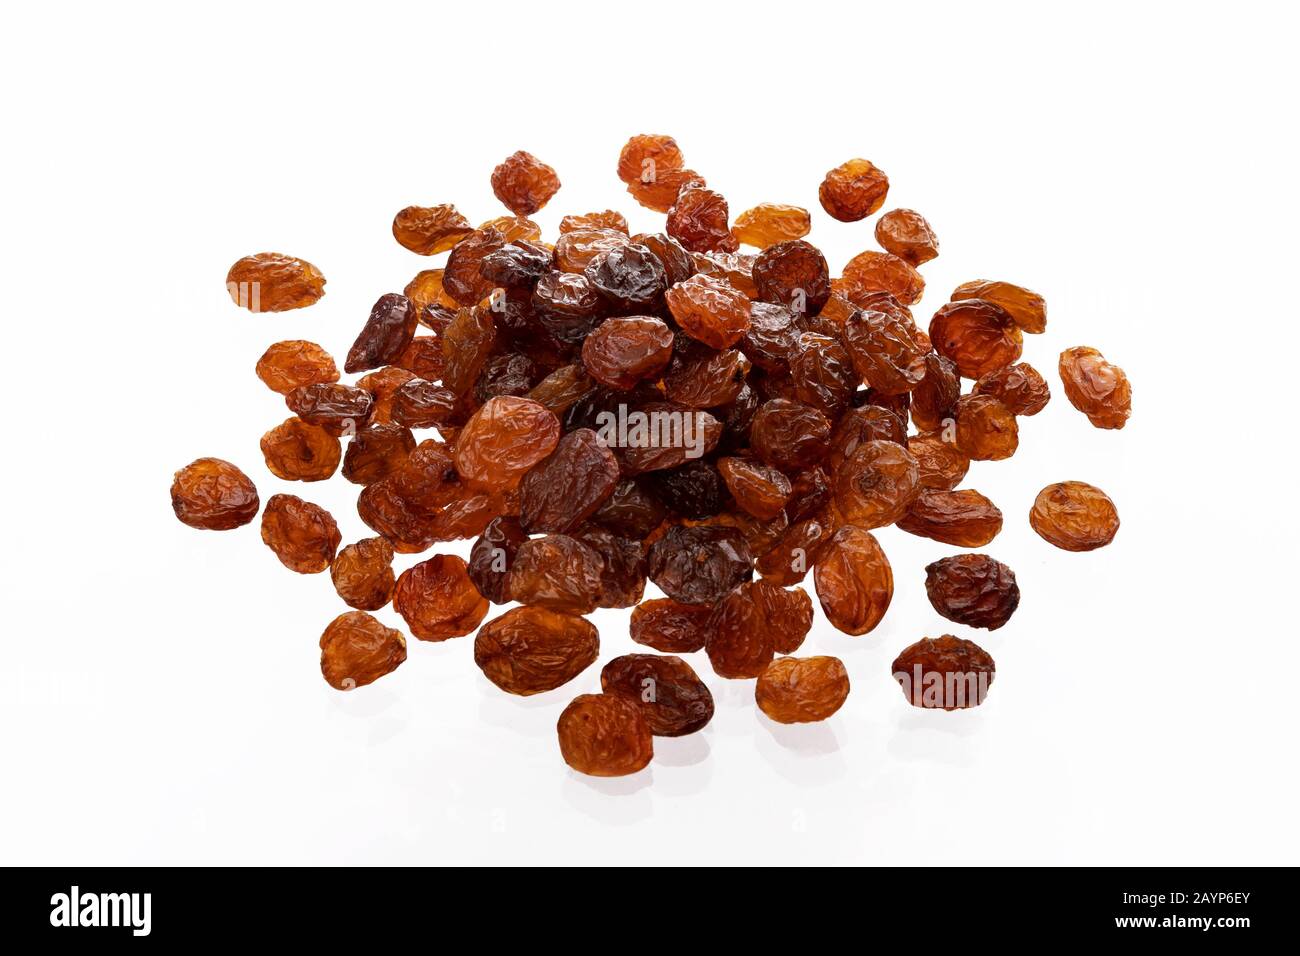 Raisins isolated on white background Stock Photo